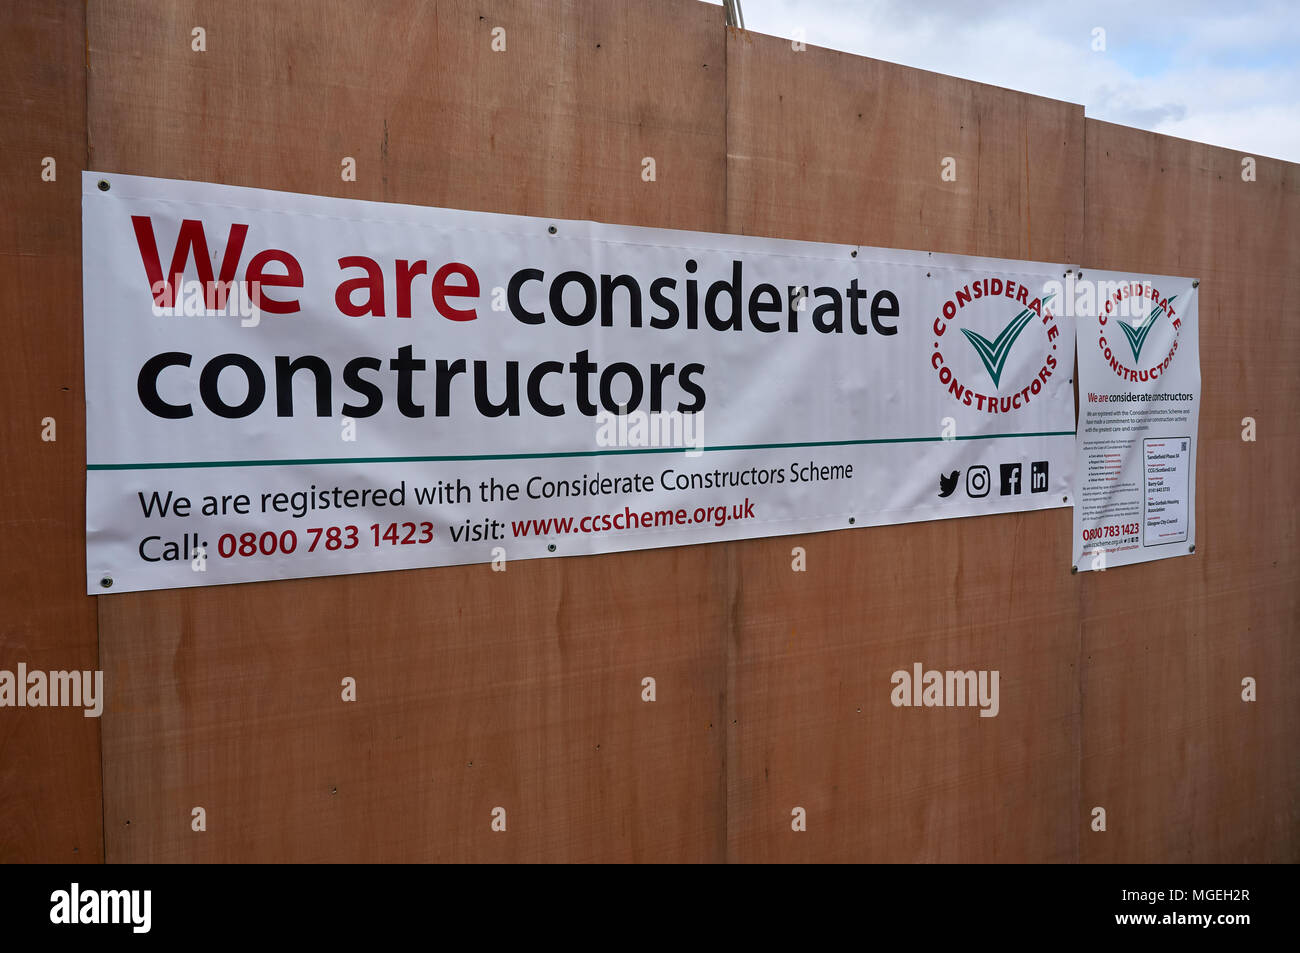 Una pancarta en la valla de un sitio en construcción información del registro con el esquema de constructores considerada por el contratista principal. Foto de stock